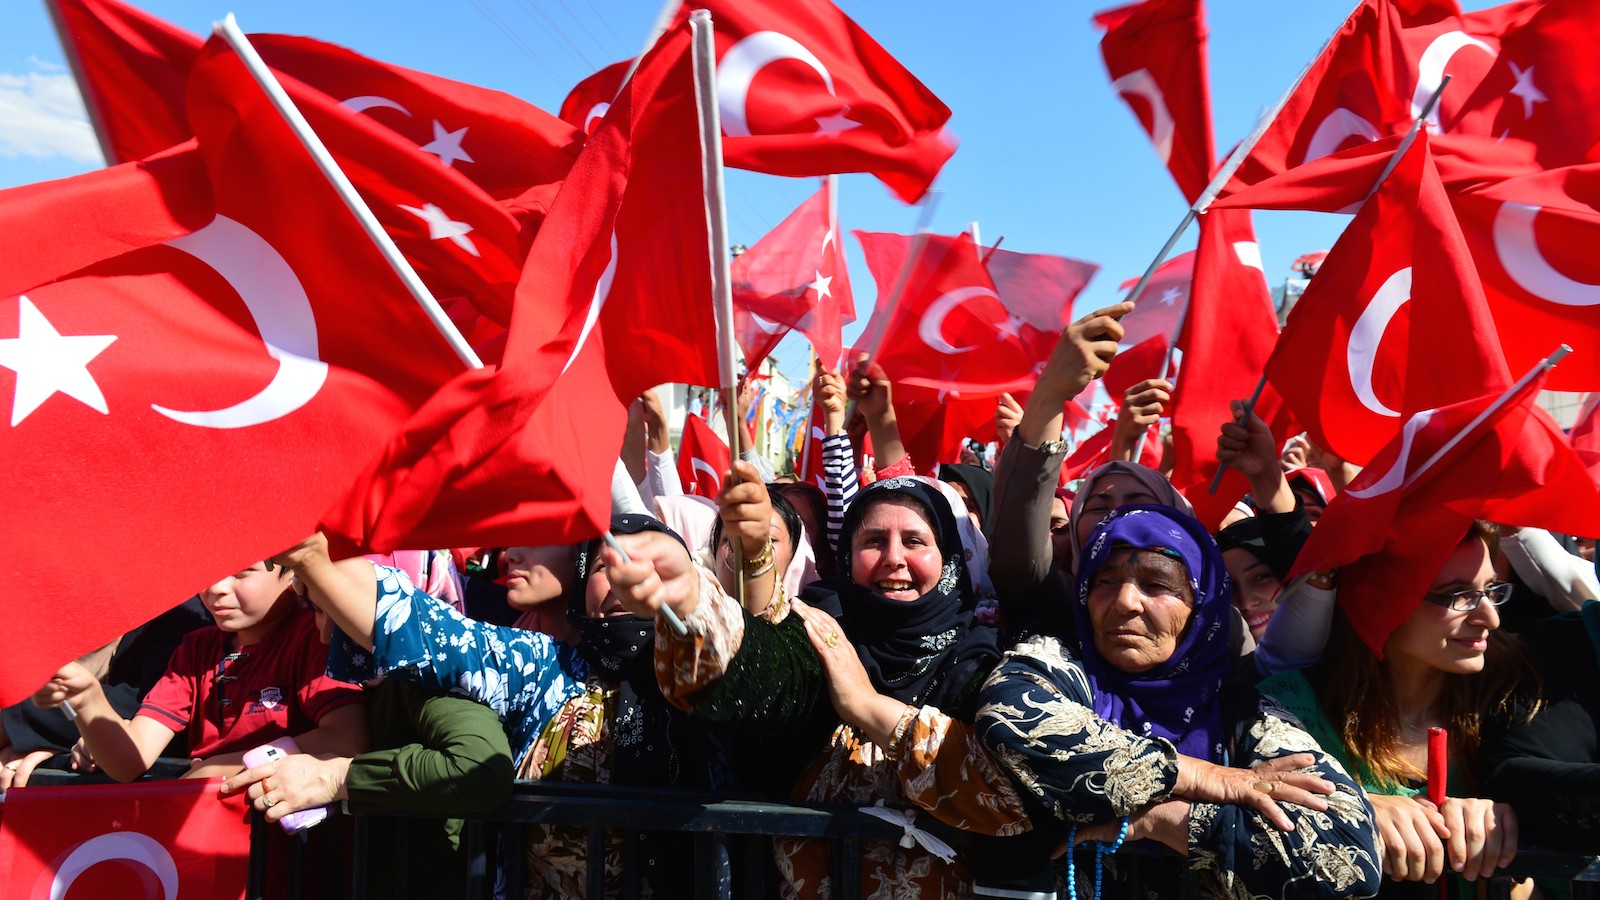 Tyrkiet et år efter kupforsøget: Erdogan står stærkere, men Tyrkiet svagere / af Ferhat Gurini